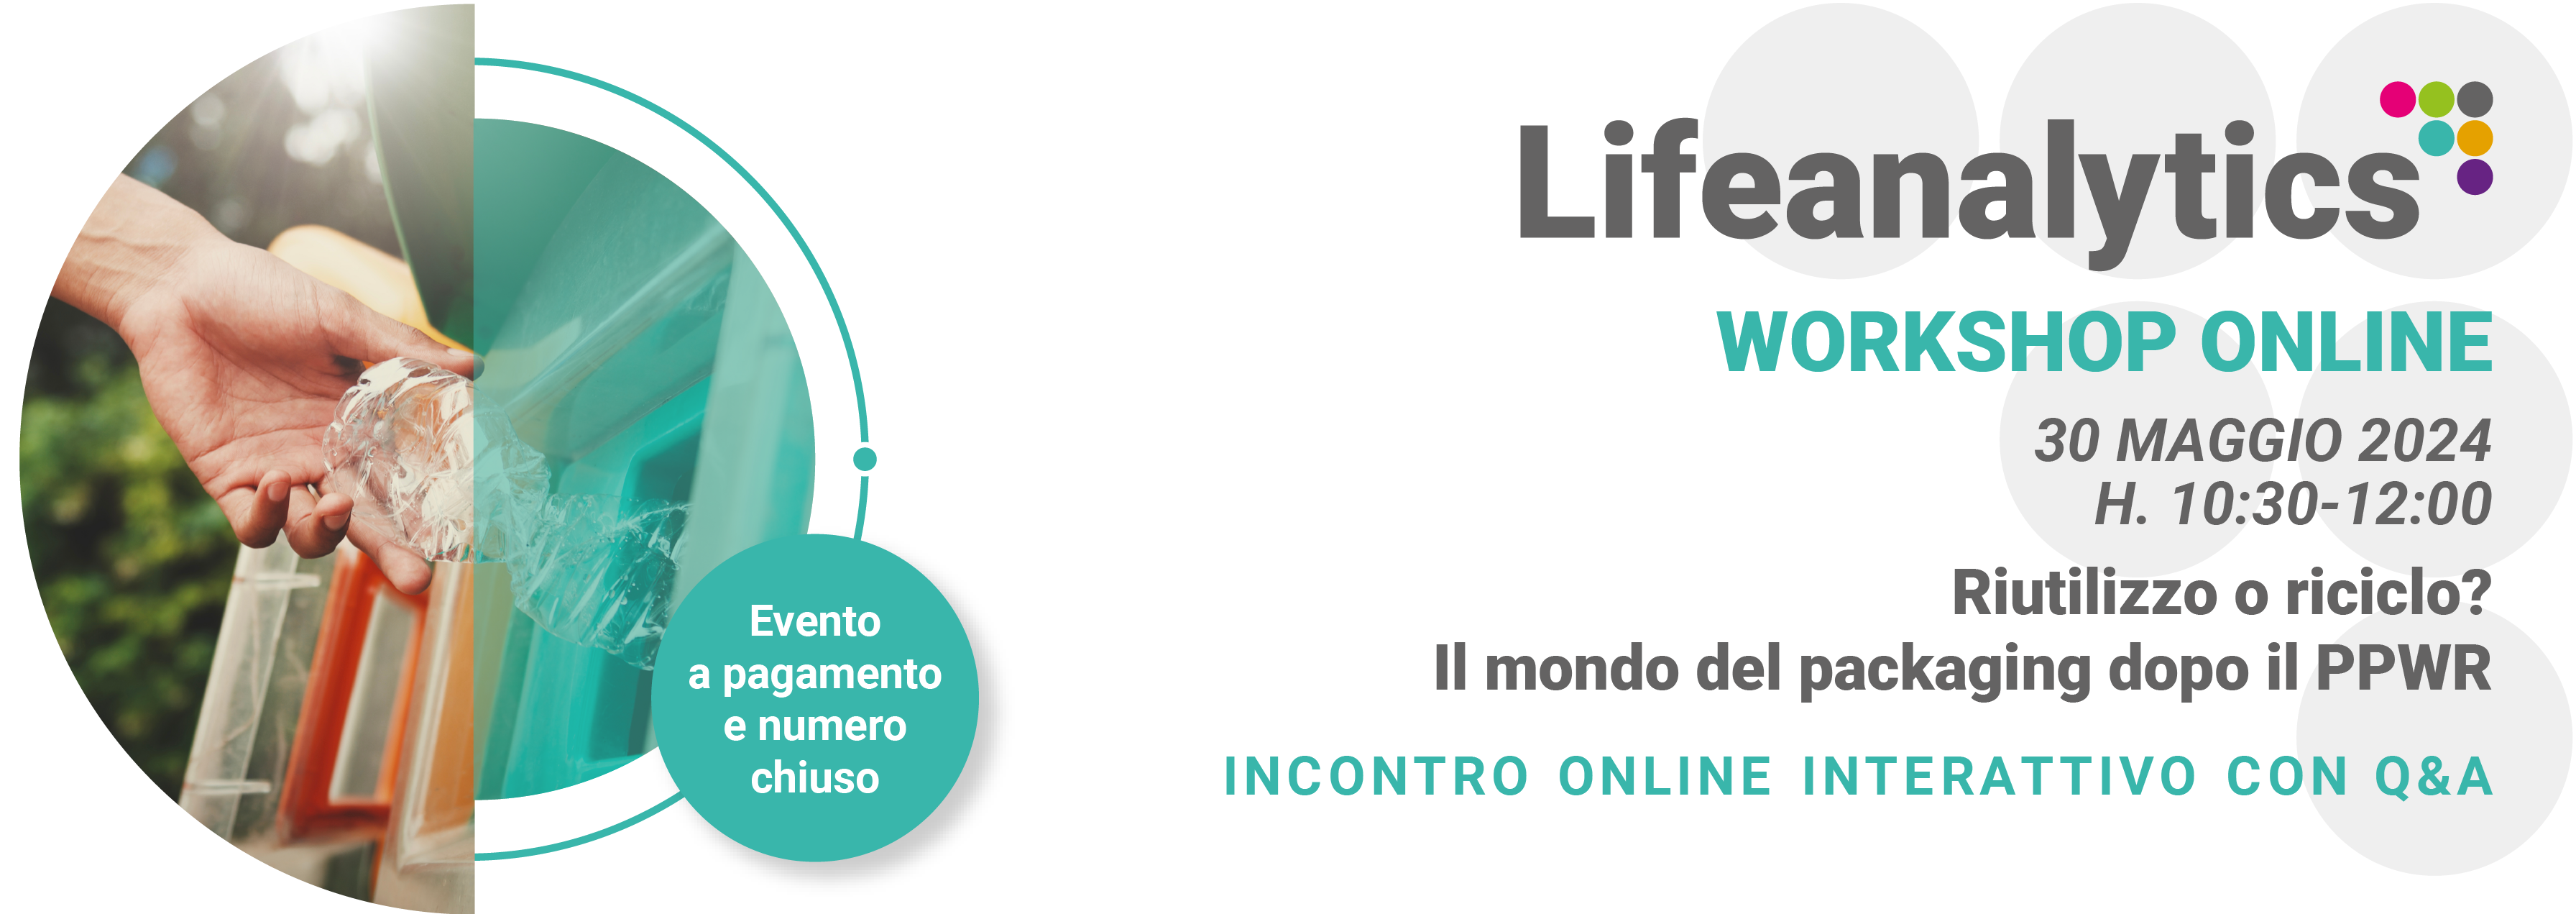 Illustrazione che promuove il workshop online Product Safety di Lifeanalytics del 30 Maggio